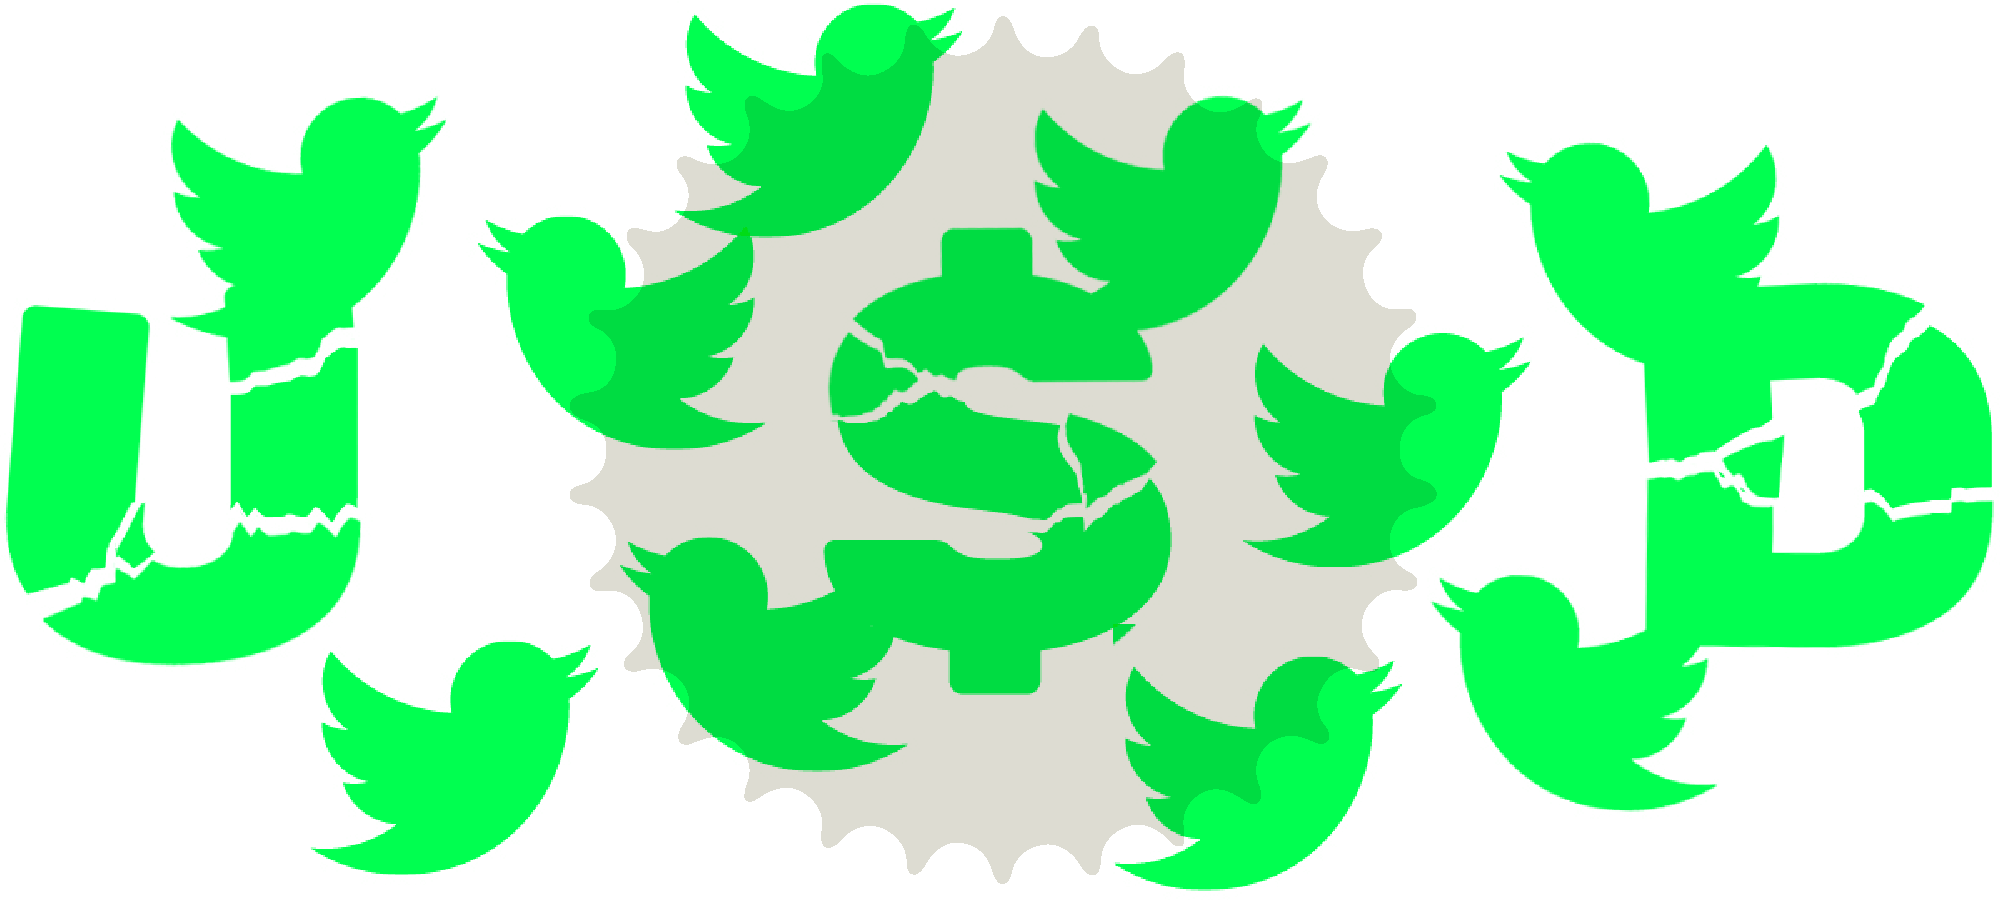 Header illustration: USD and twitter birds 